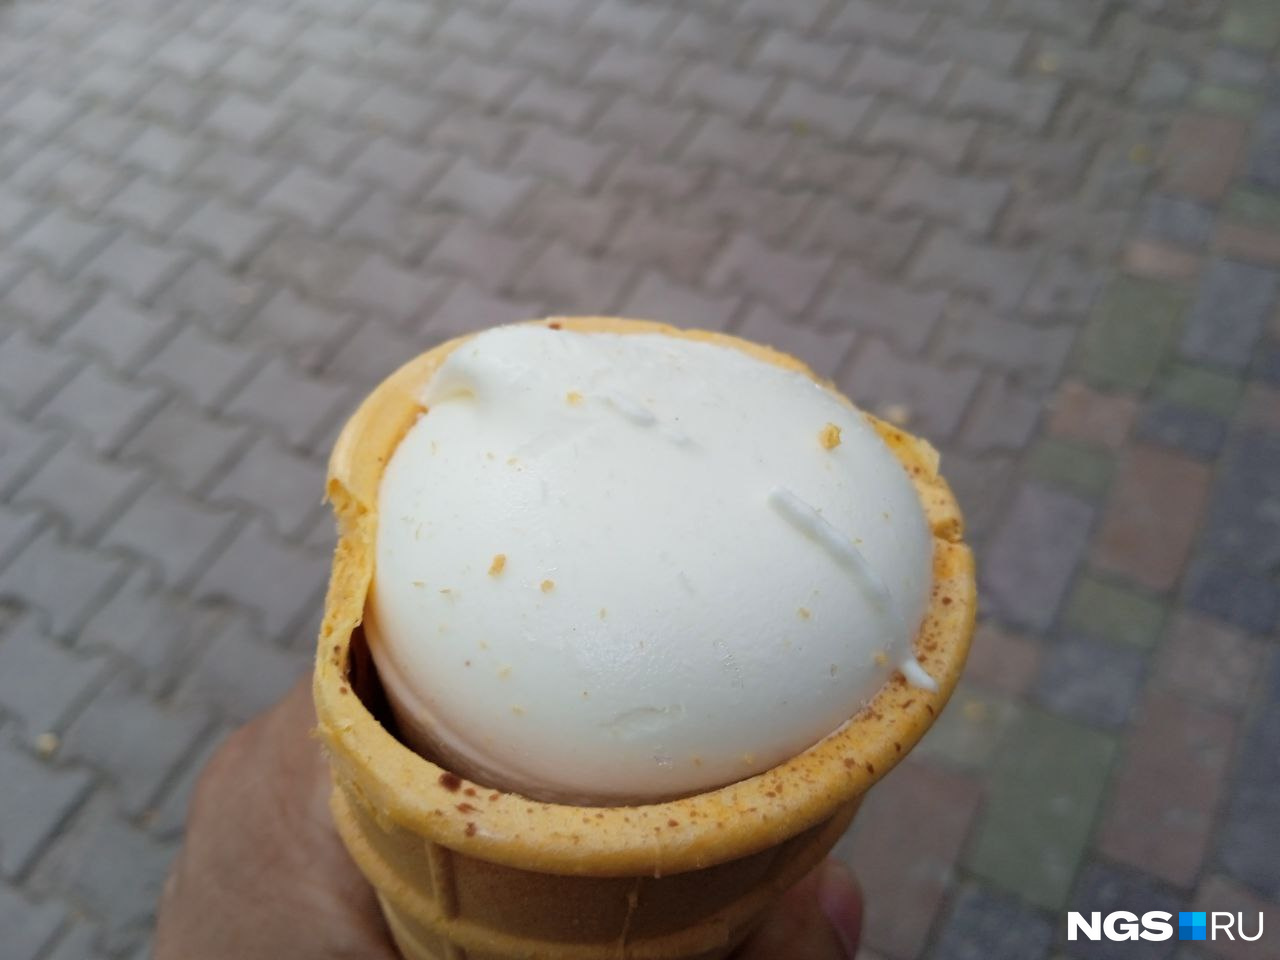 В натуральном мороженом содержатся полезные вещества в небольших количествах, но его довольно сложно найти в магазинах